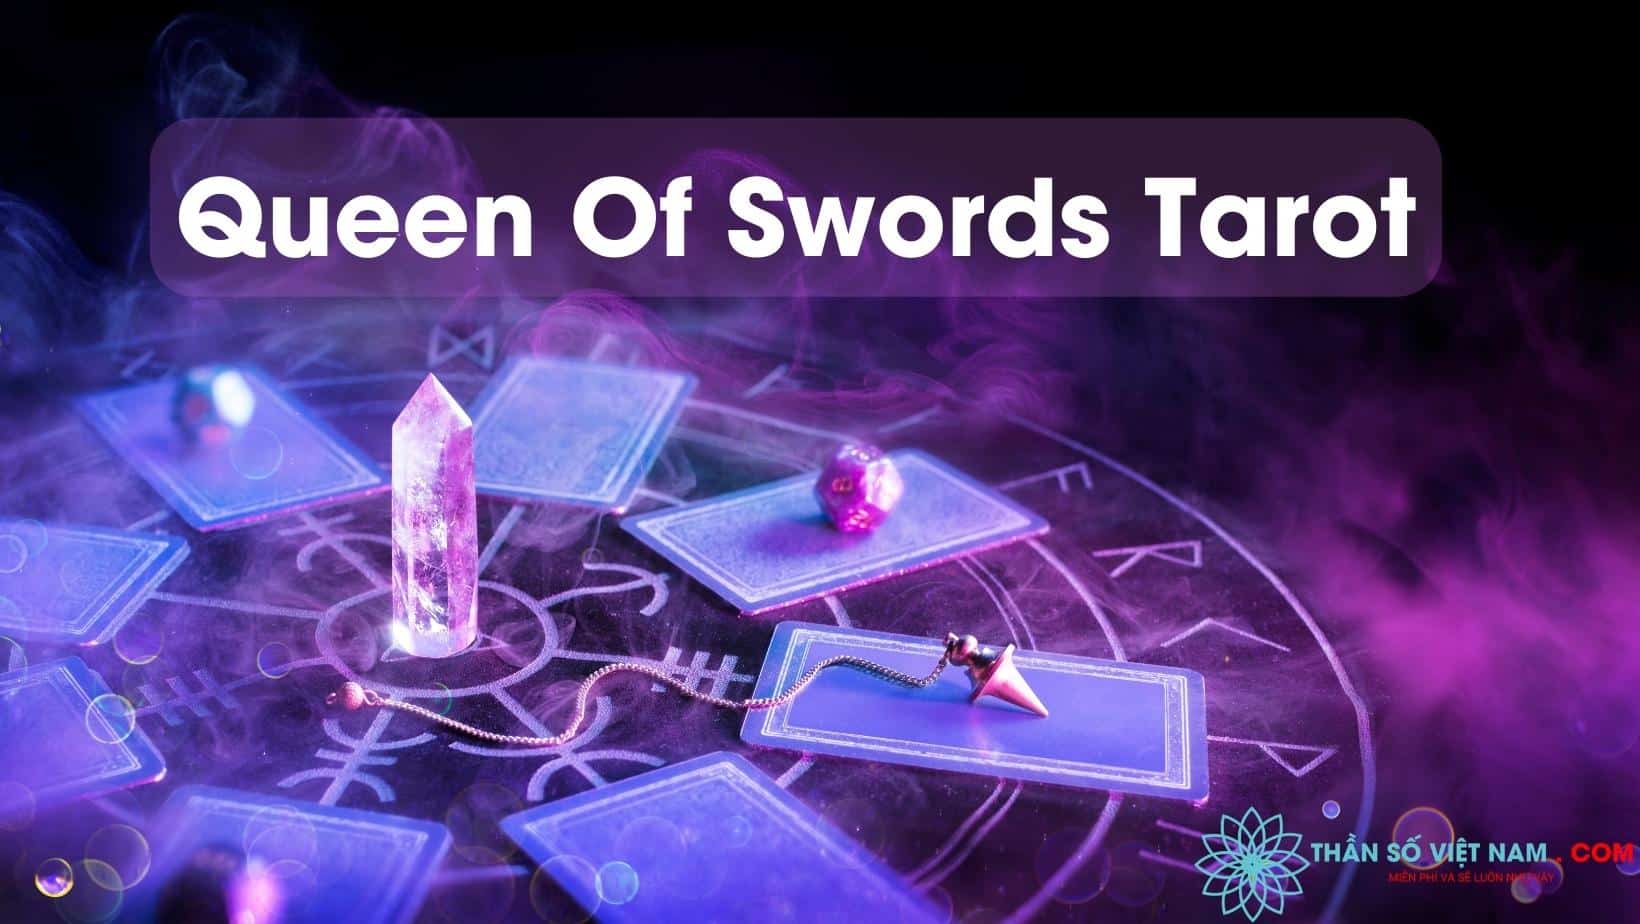 Hãy để ảnh liên quan đến Queen Of Swords Tarot thực hiện cuộc phiêu lưu của bạn trong thế giới tâm linh. Tìm hiểu về nữ hoàng sắc lệnh và sức mạnh của lá bài này, và trải nghiệm nguồn cảm hứng đặc biệt giữa thiền định và trí tuệ.